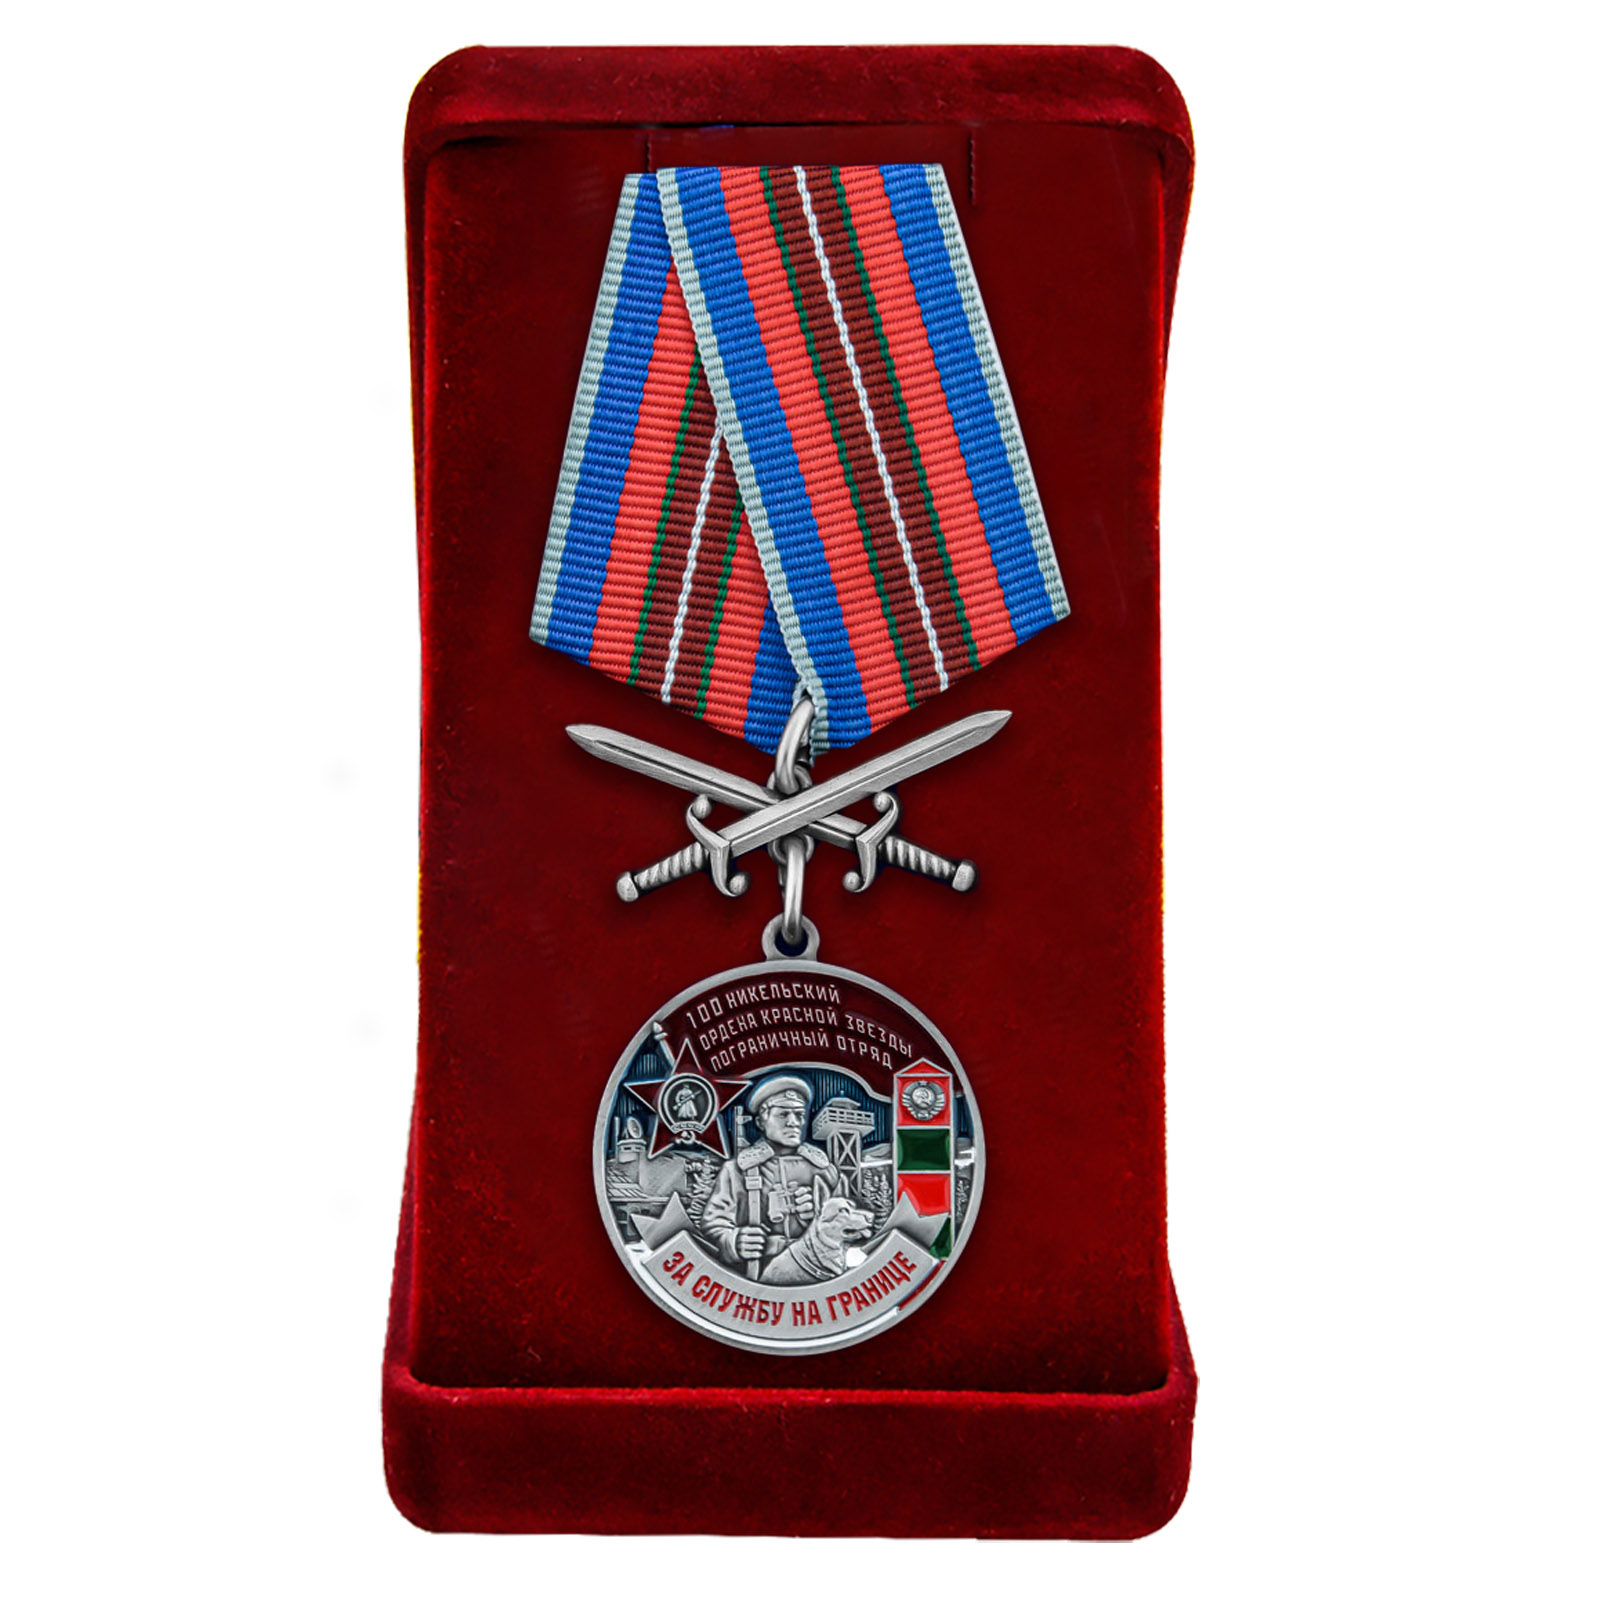 Купить медаль "За службу в Никельском погранотряде" в бархатистом футляре